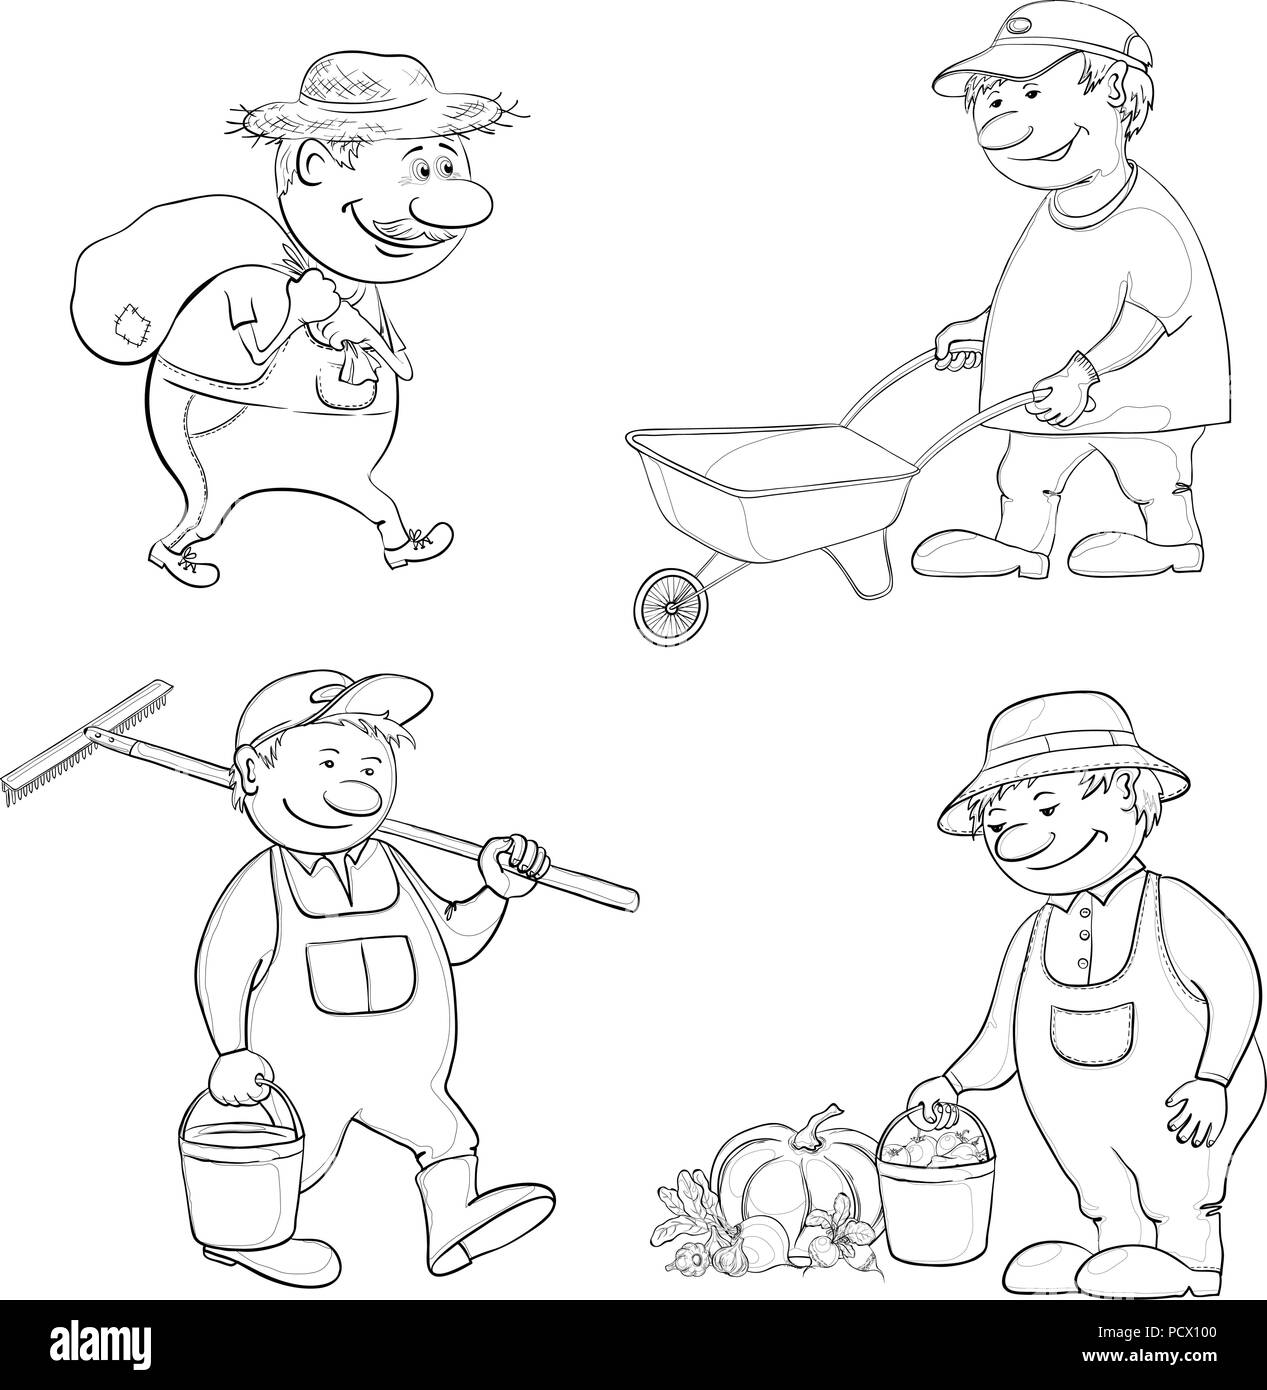 Cartoon Gärtner arbeiten, trägt einen Sack, trägt leeren Wagen, trägt eine Schaufel und Rechen, mit der Ernte von Gemüse. Schwarze Kontur auf weißem Bac Stock Vektor